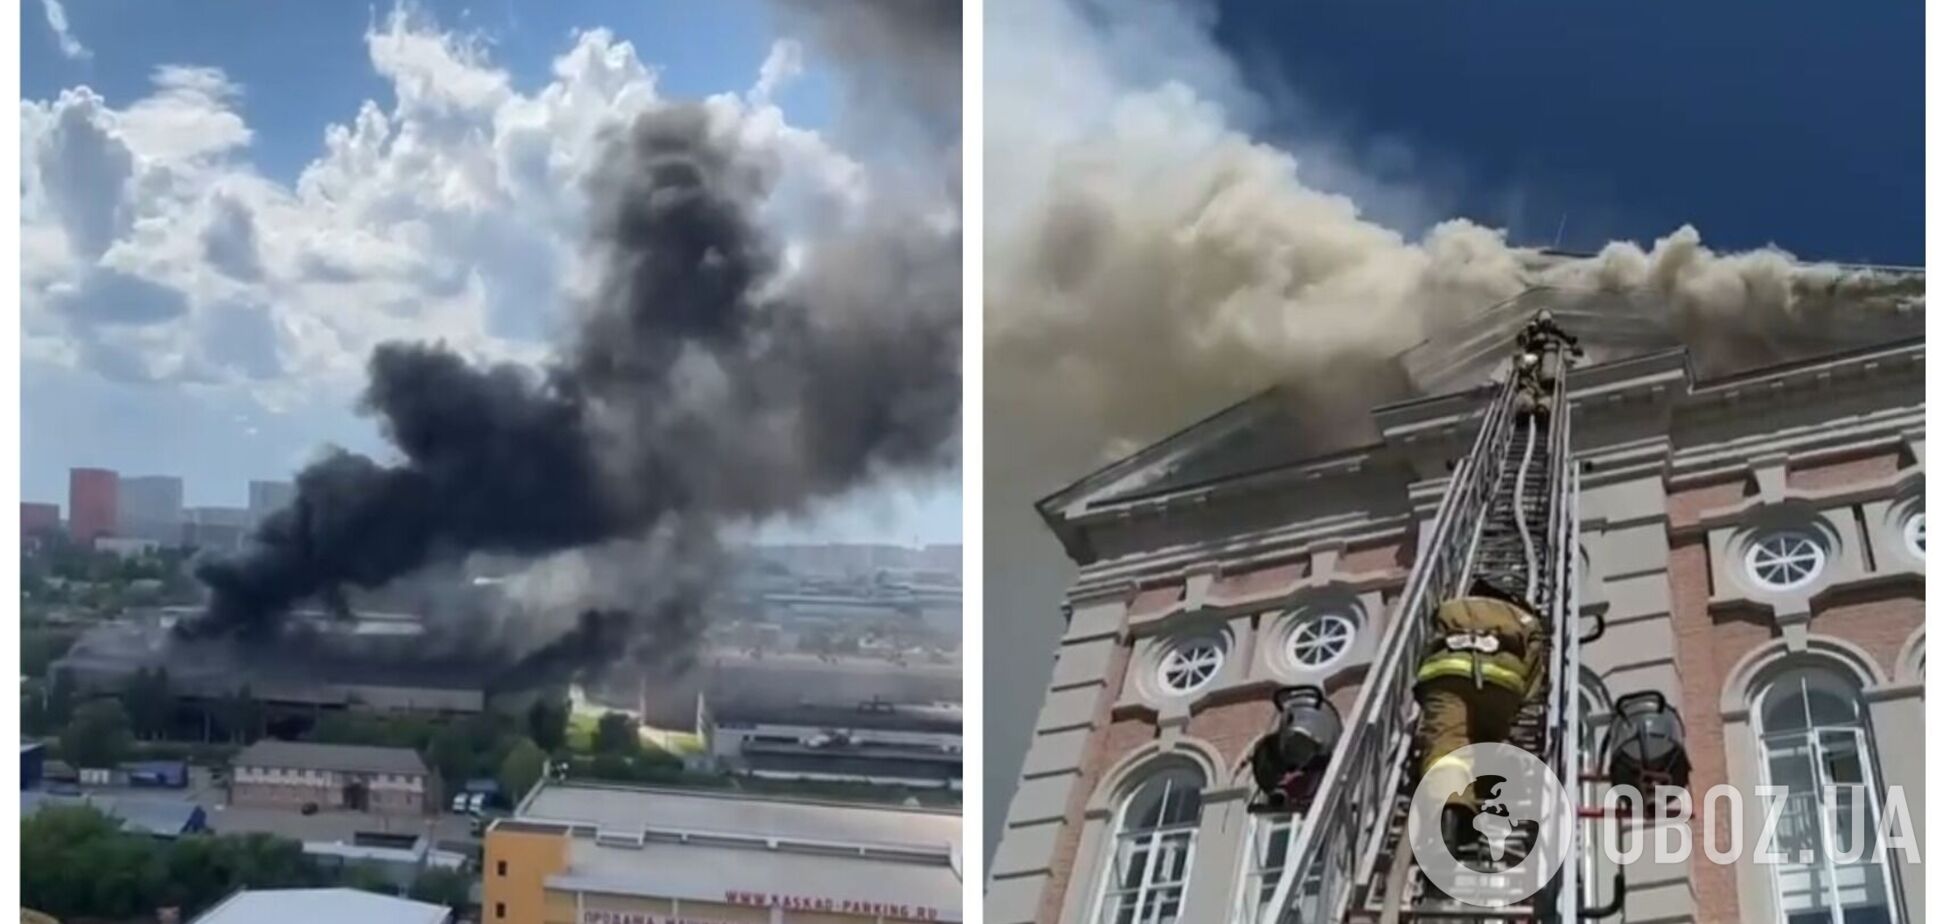 В России вспыхнули новые пожары: горит лакокрасочный завод и здание молодежной организации. Видео